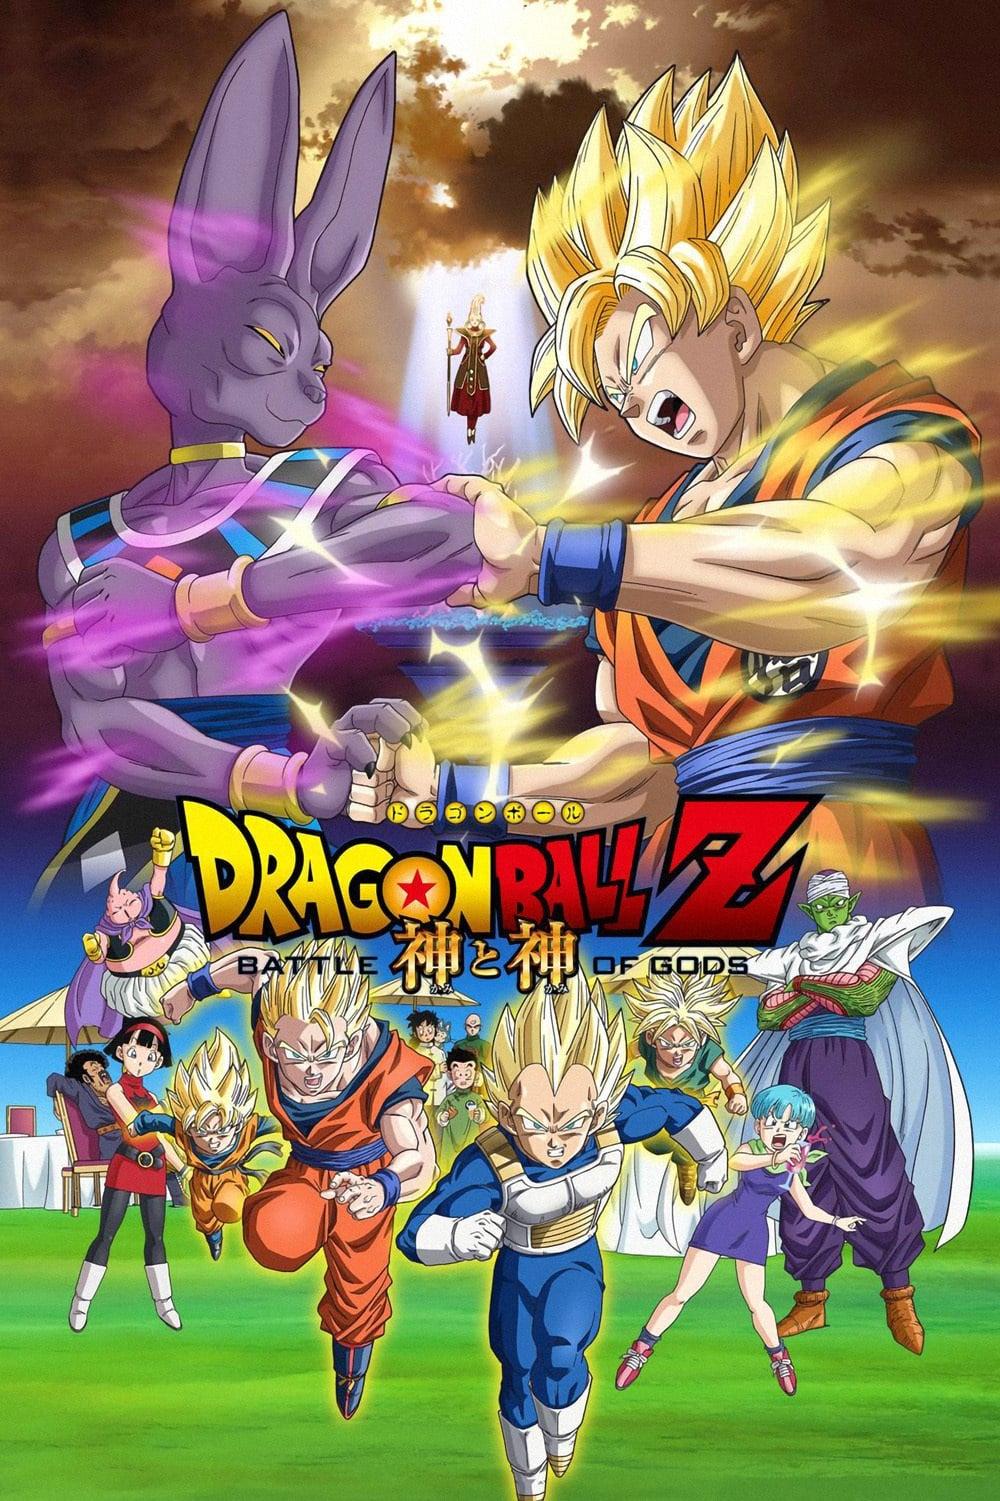 Dragon Ball Z - Battle of Gods est-il disponible sur Netflix ou autre ?